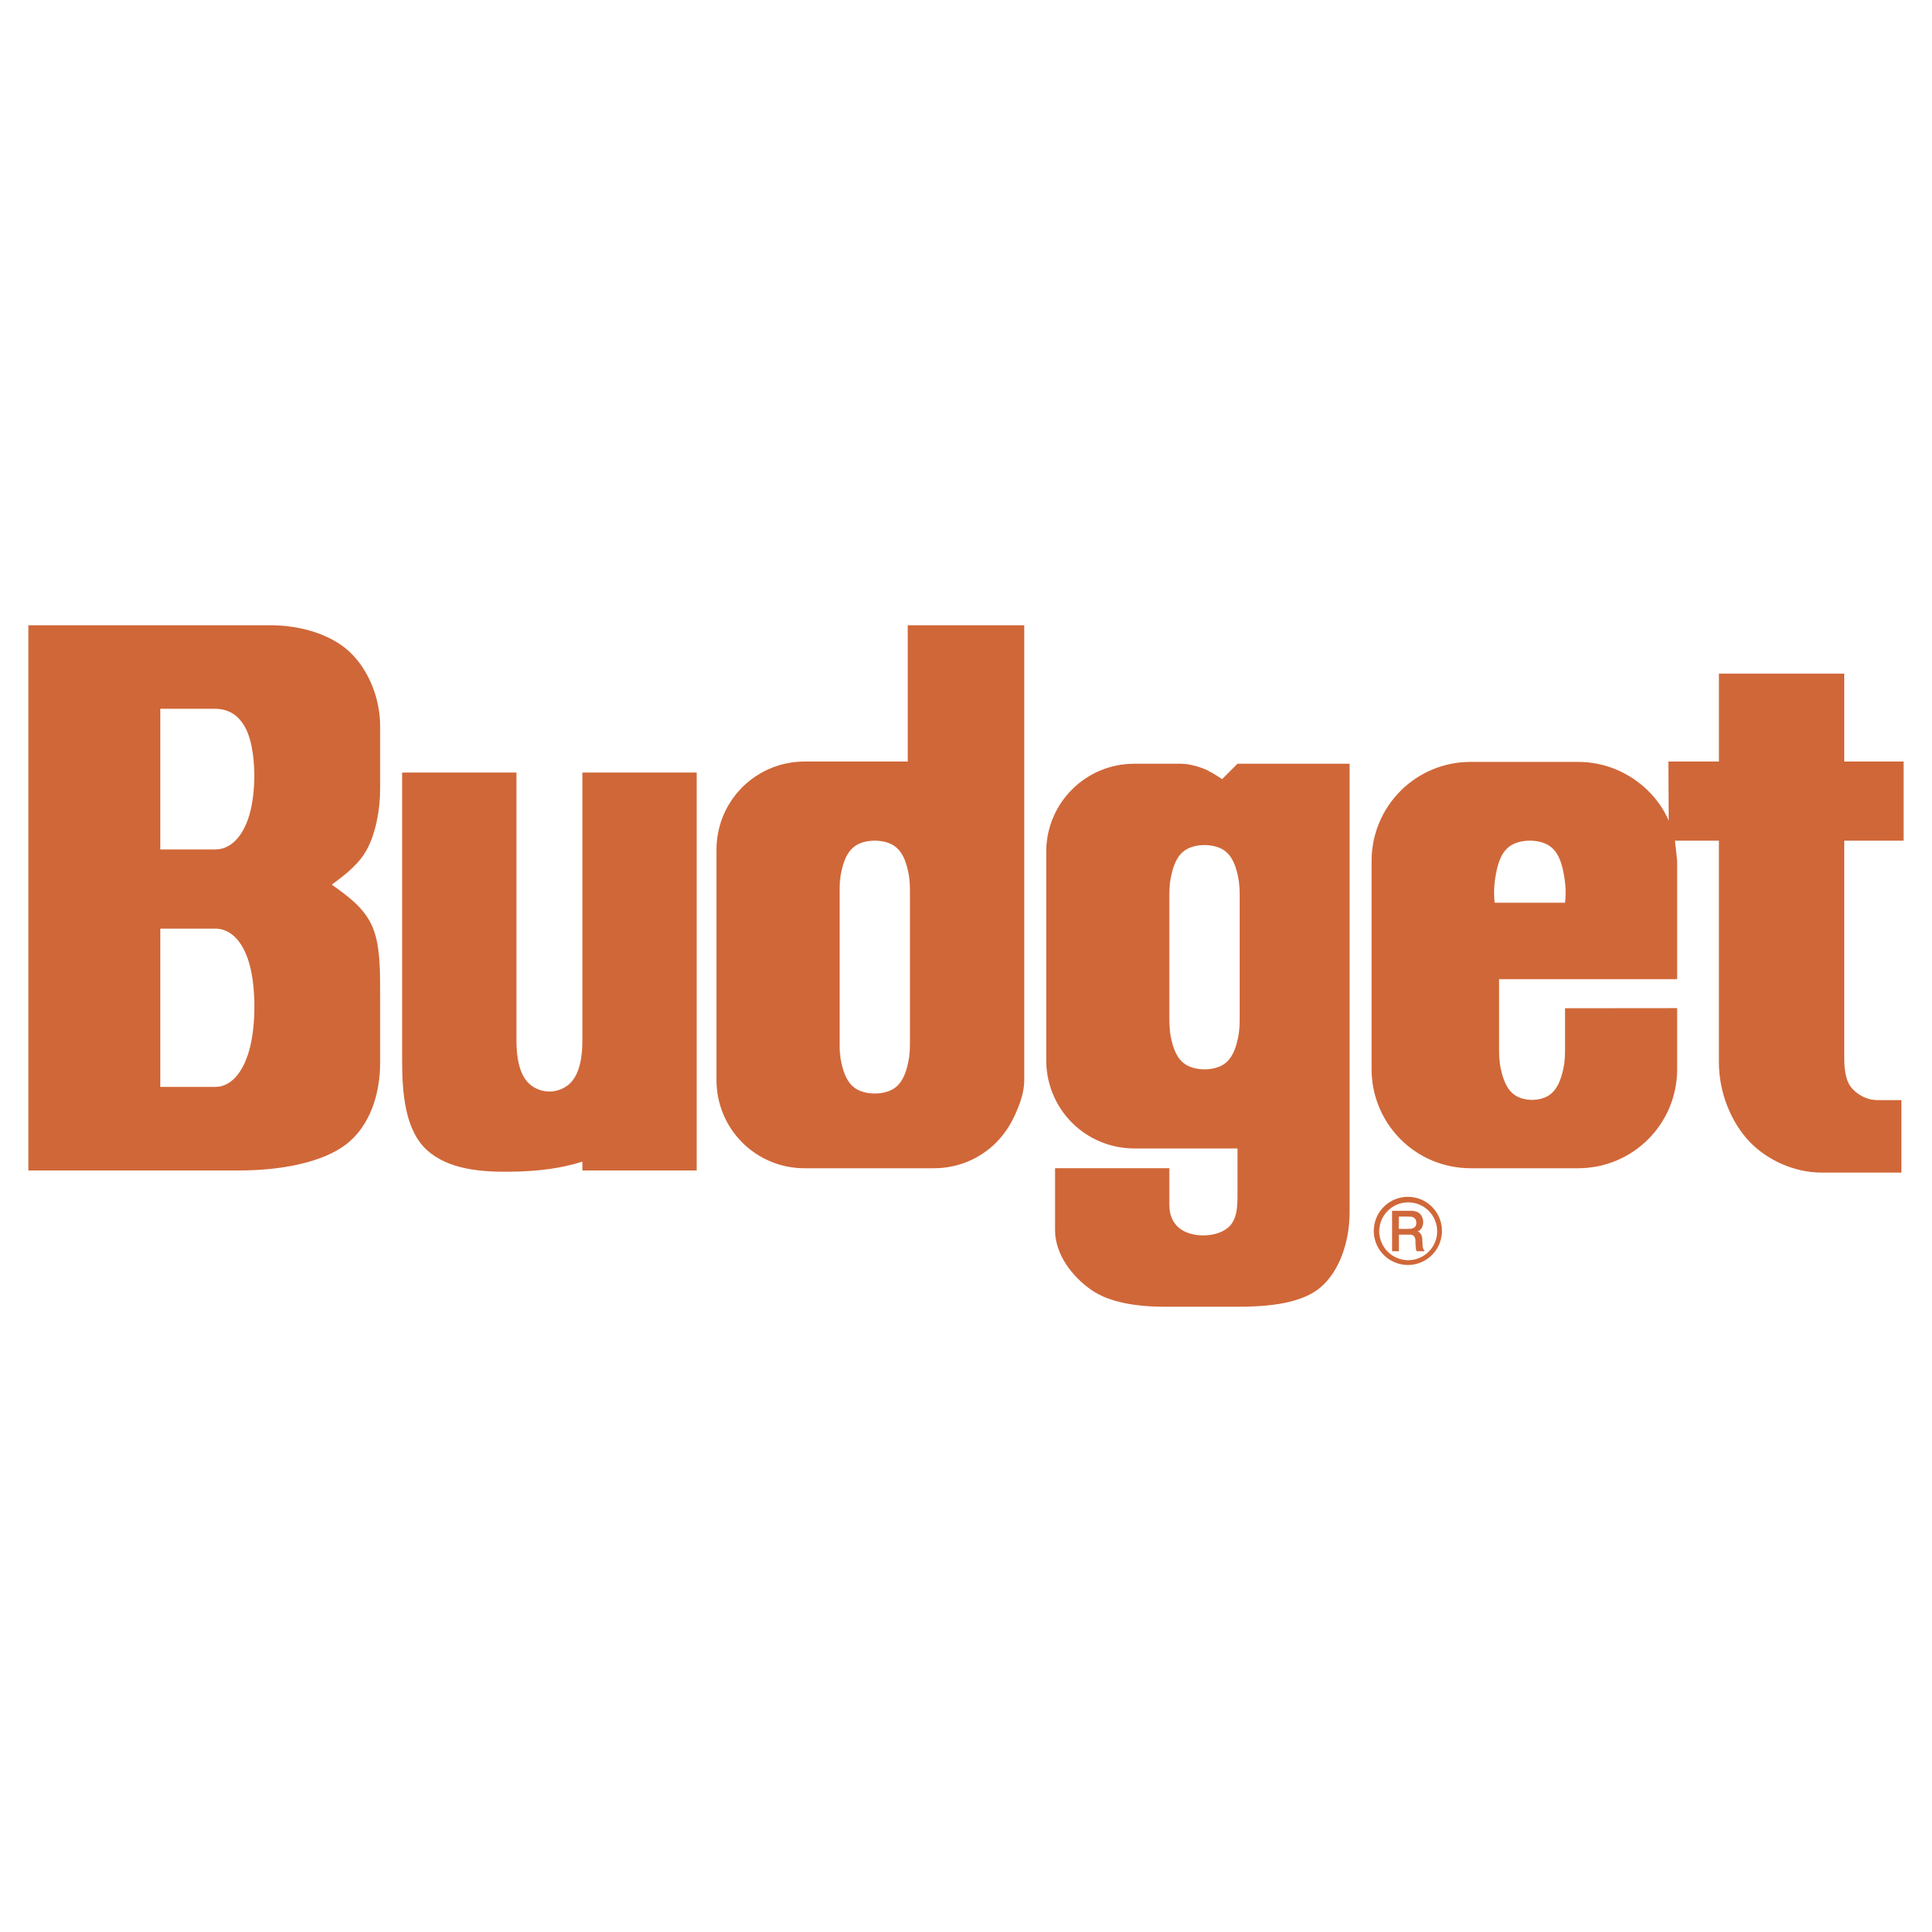 Budget Logo Transparent Image